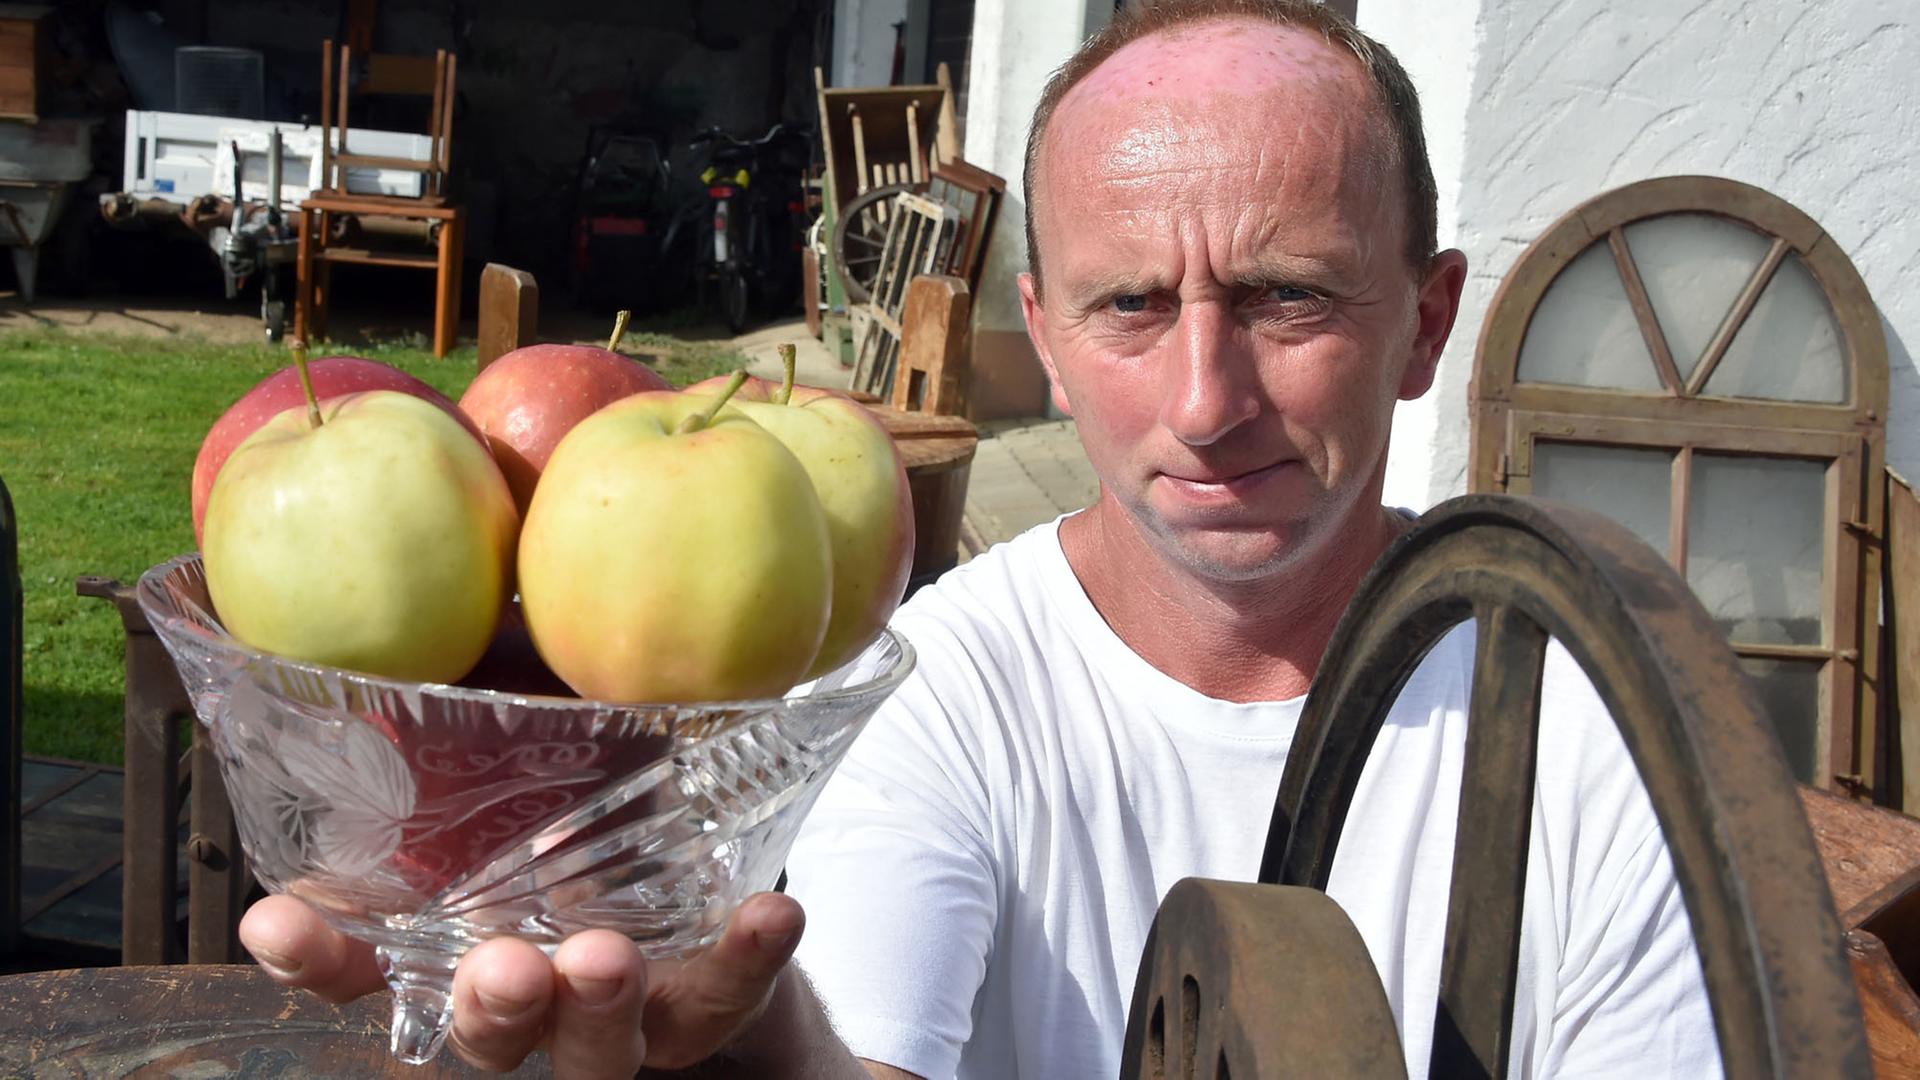 ARCHIV - Marko Steidel präsentiert am 18.08.2017 in Groß Drewitz (Brandenburg) eine Schale mit Äpfeln.